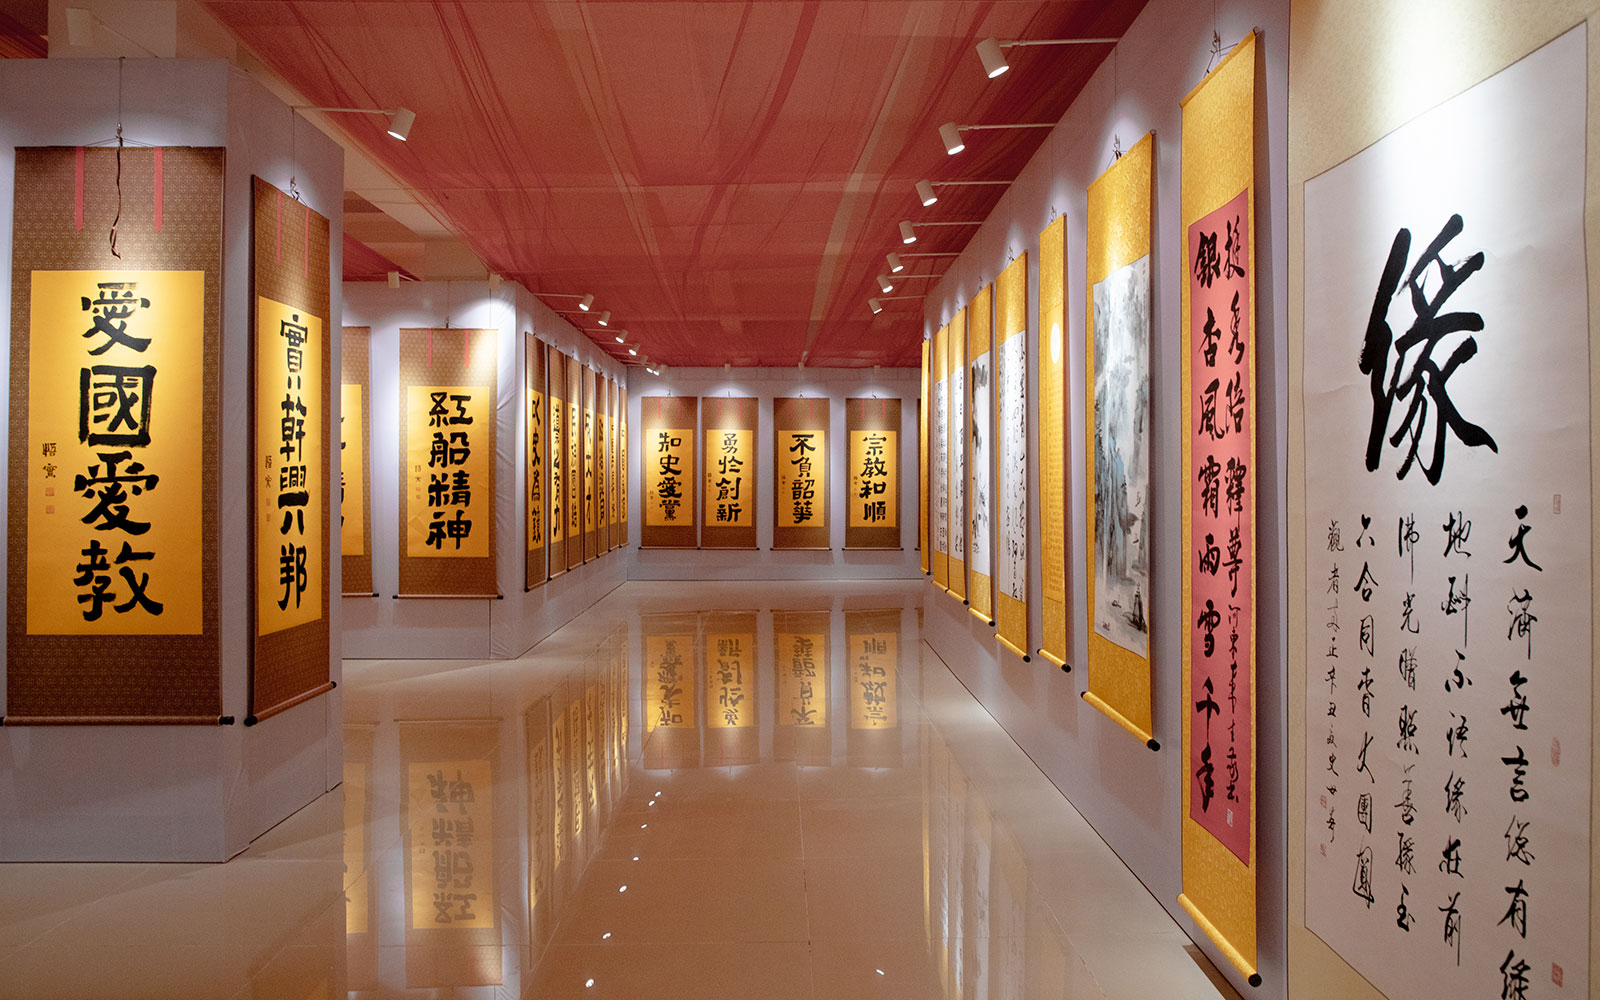 烟台市佛教界庆祝中国共产党成立100周年书画展开幕